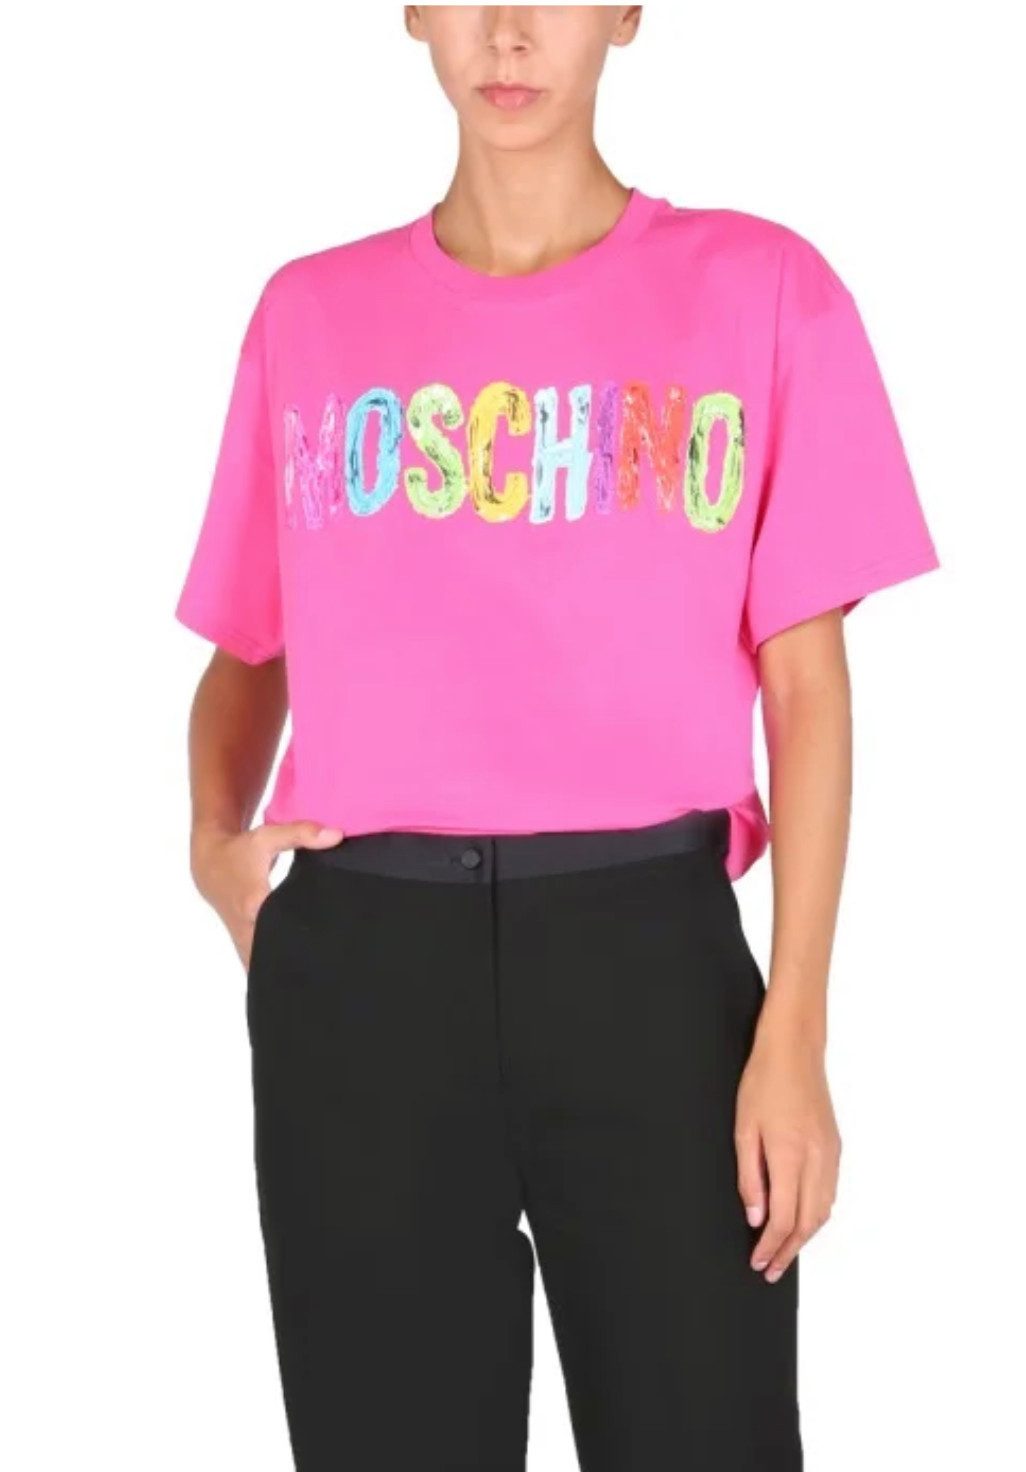 Moschino T-Shirt COUTURE T-Shirt 3D Logo Paint-Effect Shirt Top Oversize